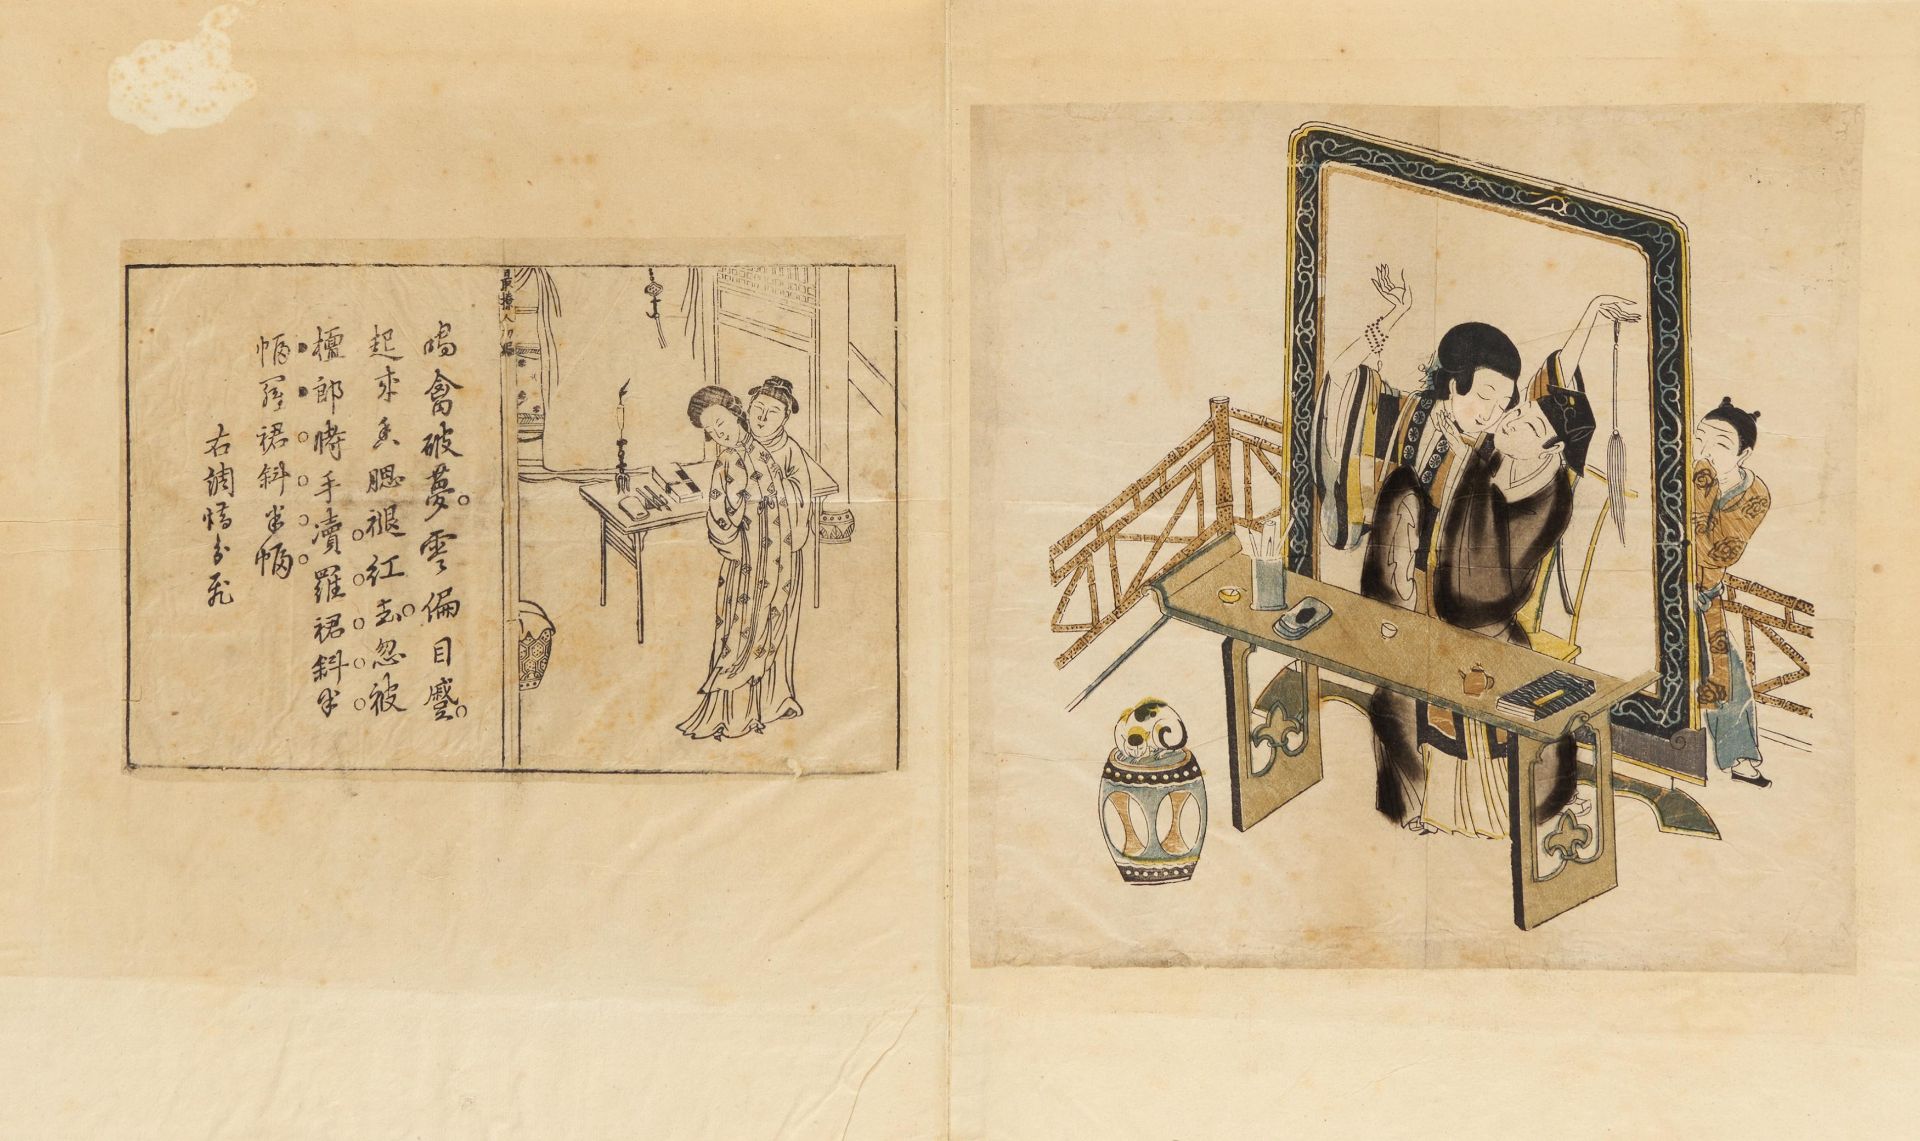 SECHS HOLZSCHNITTE IN ZWEI HEFTEN. China. Qing-Dynastie. 18. Jh. Farbholzschnitte mit bis zu - Bild 3 aus 5